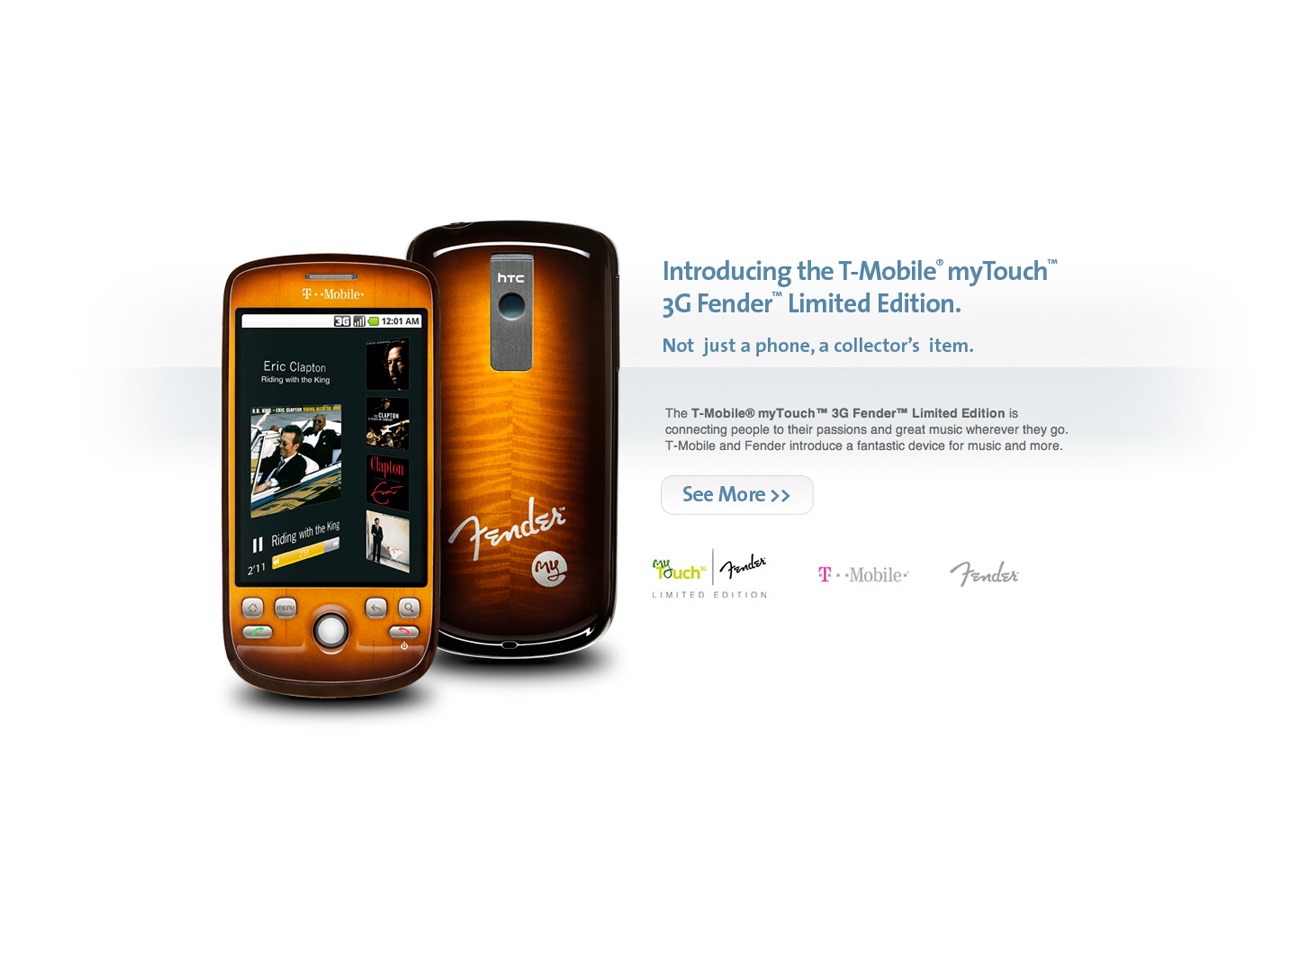 tMobile MyTouch 3G Fender Limited Edition Website Design